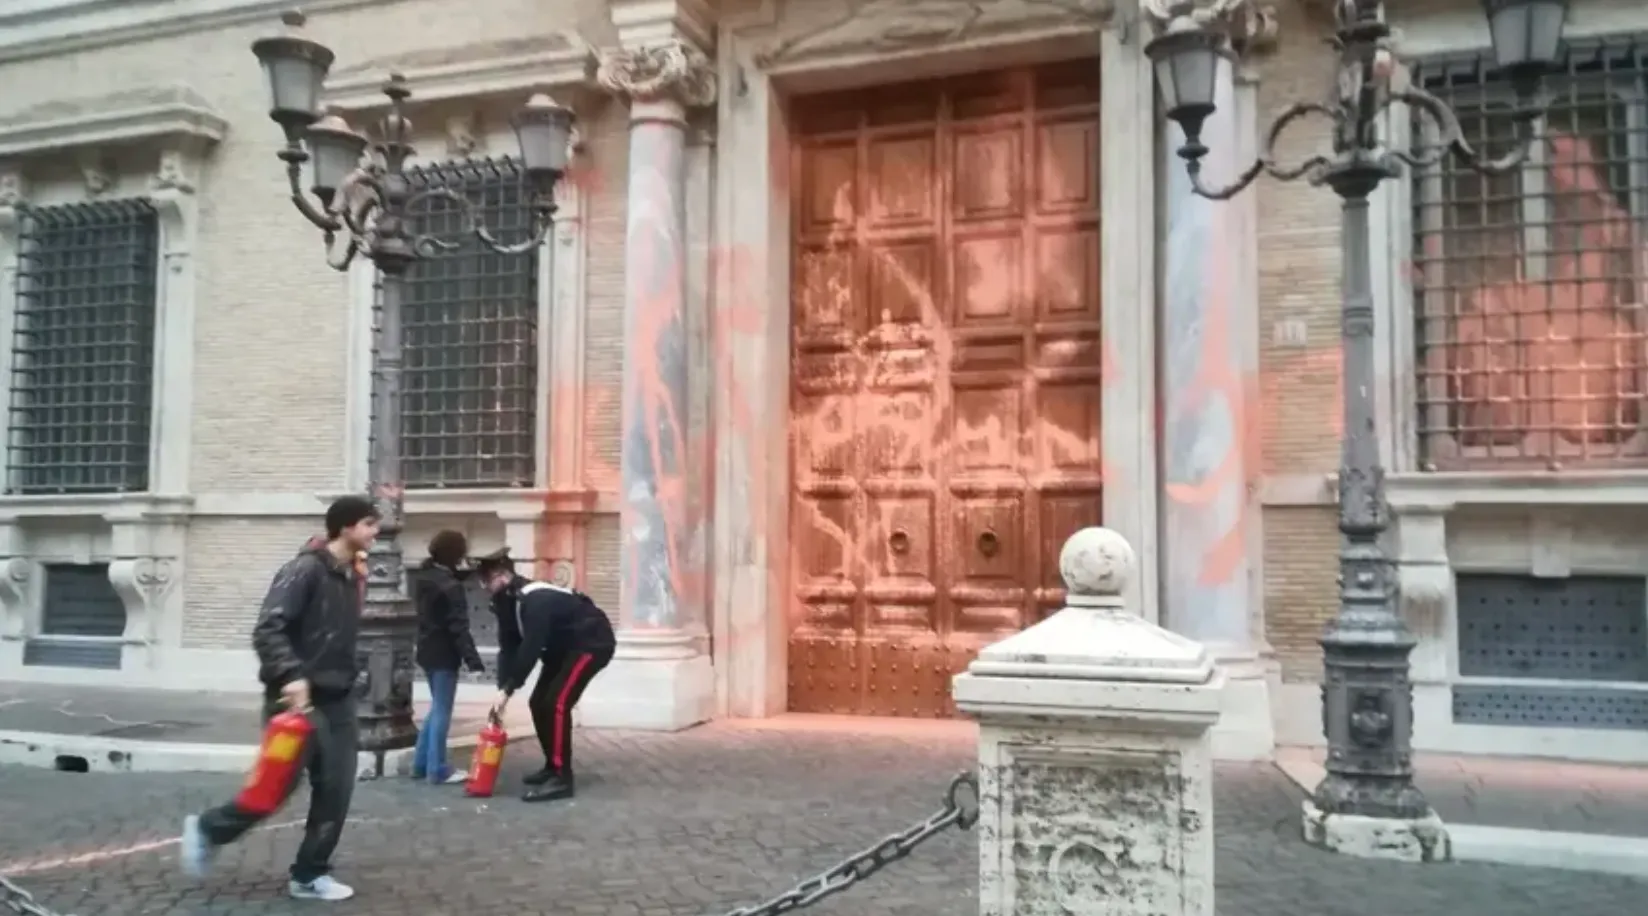 Палаццо Мадама в Риме во время протеста облили краской / Фото Ultima Generazione